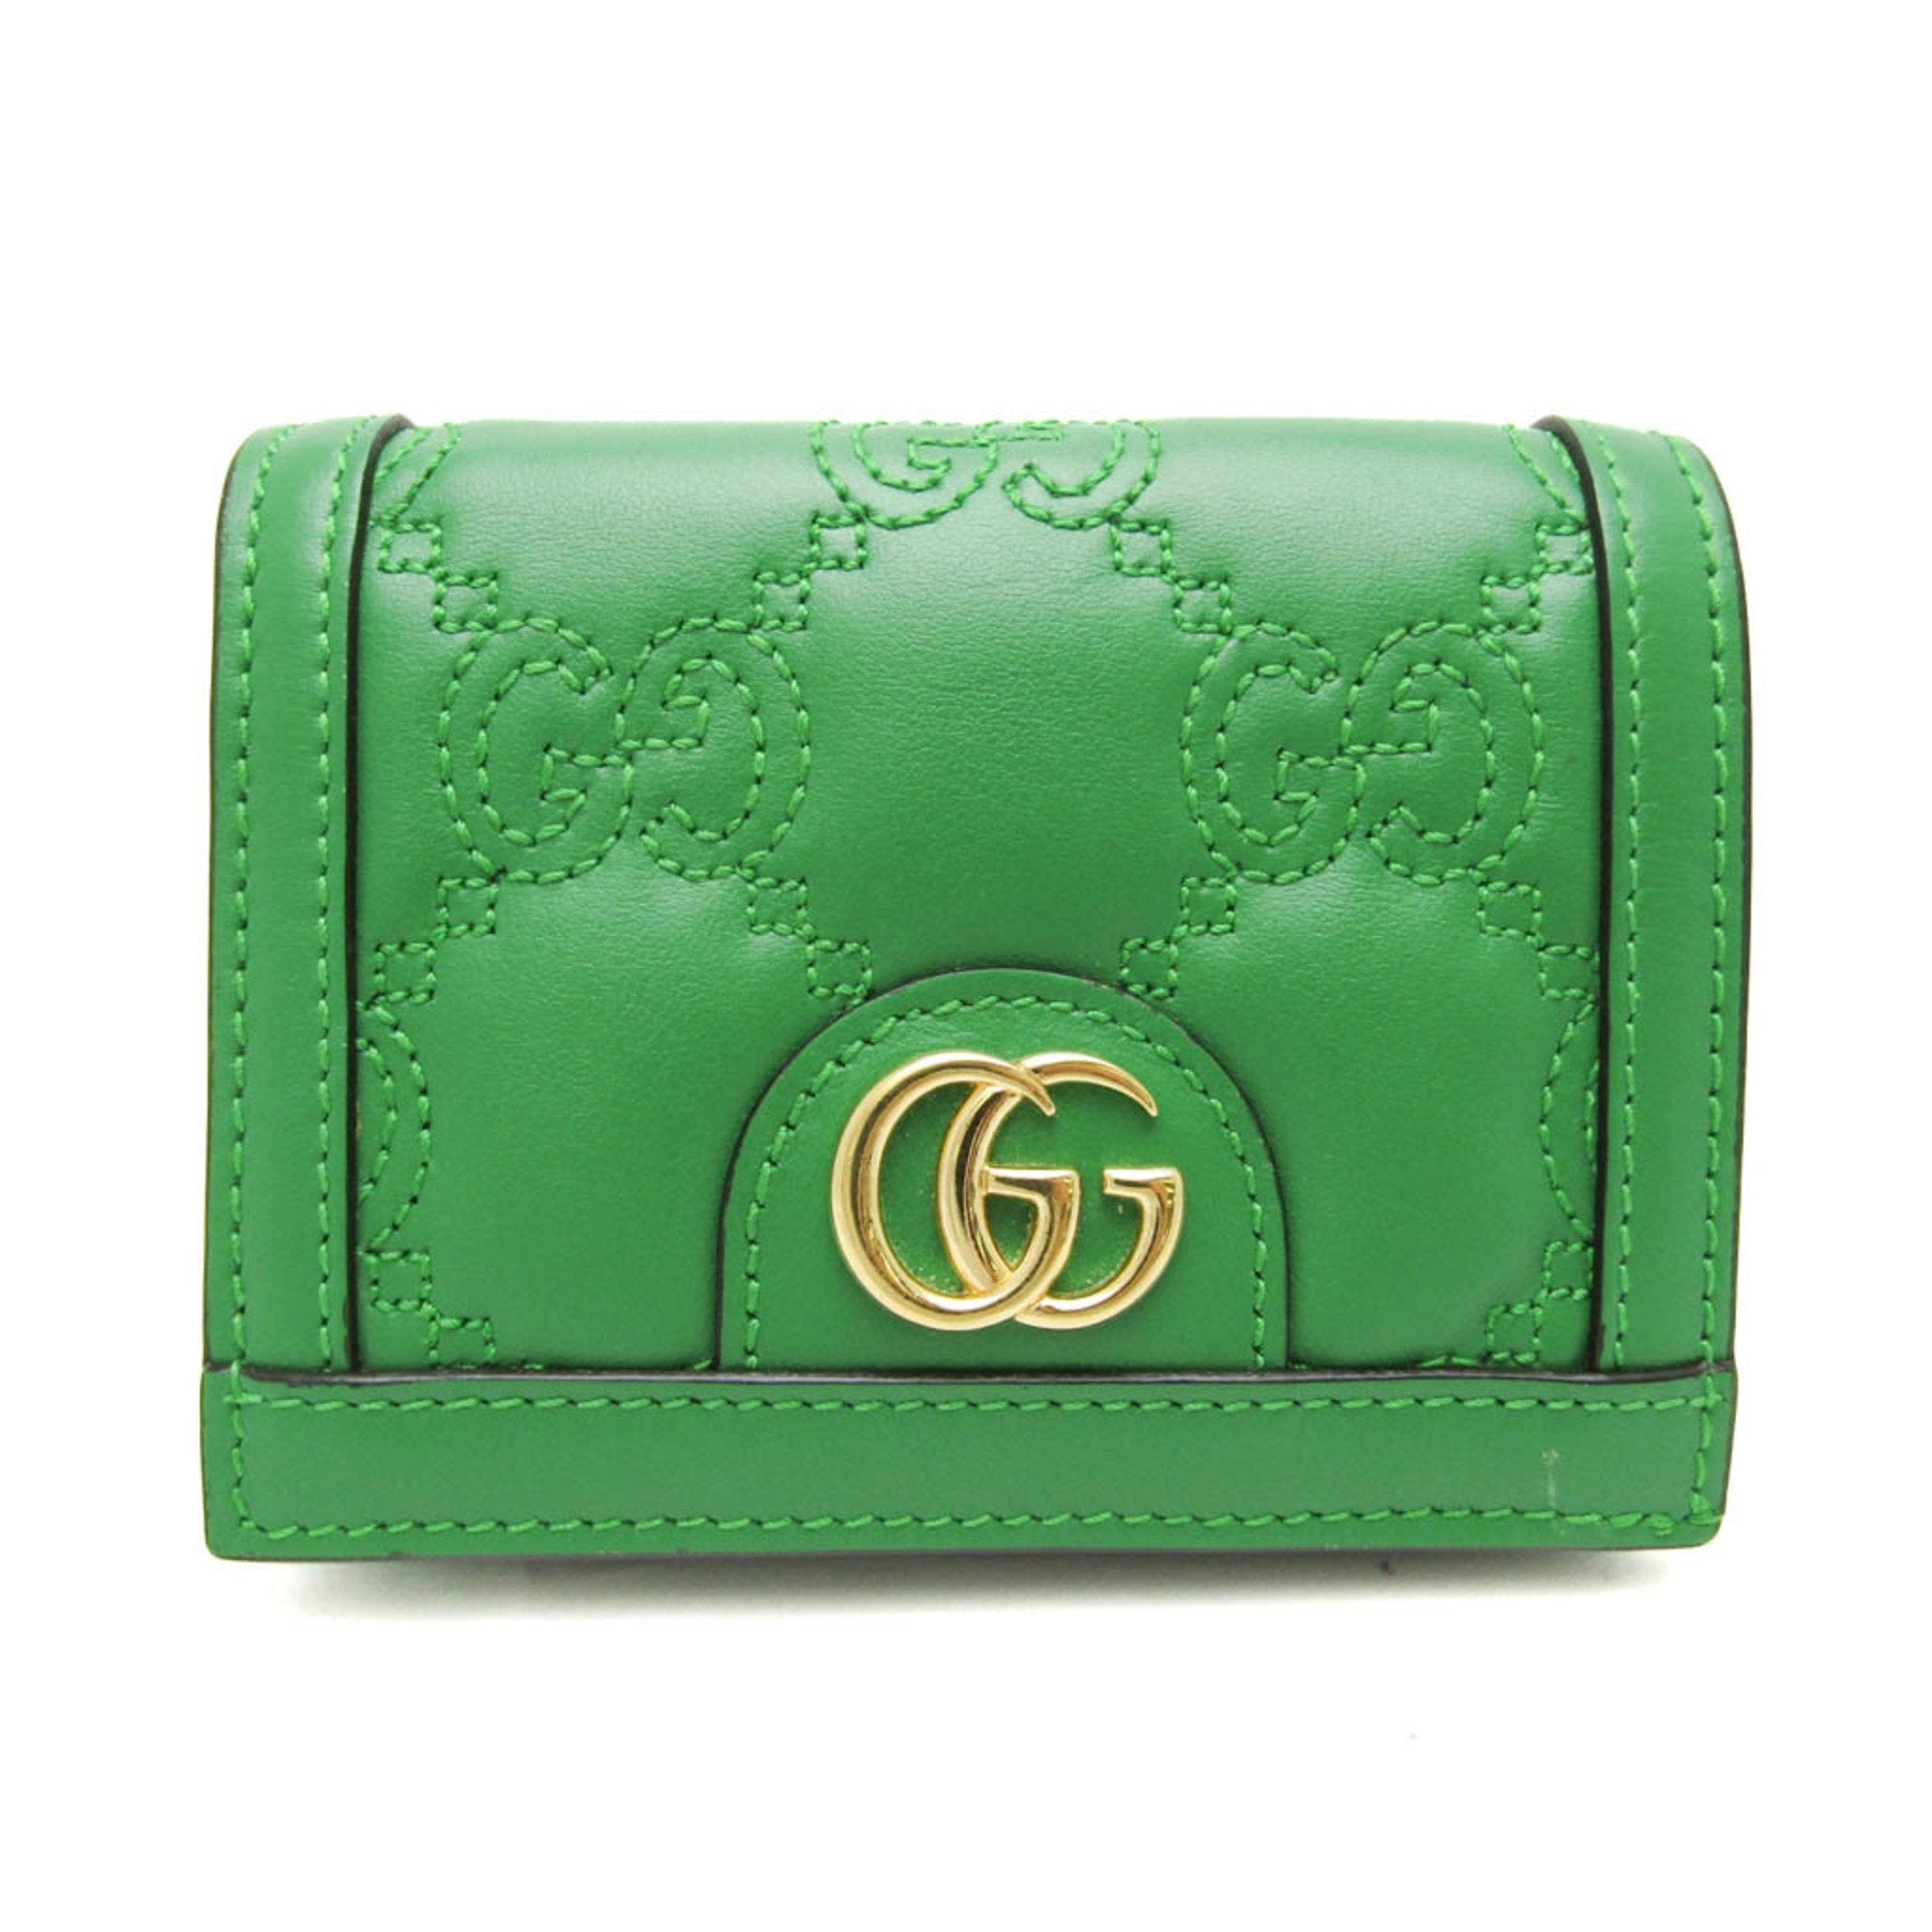 GG Matelasse 723786 Women's Leather Wallet [bi-fold]